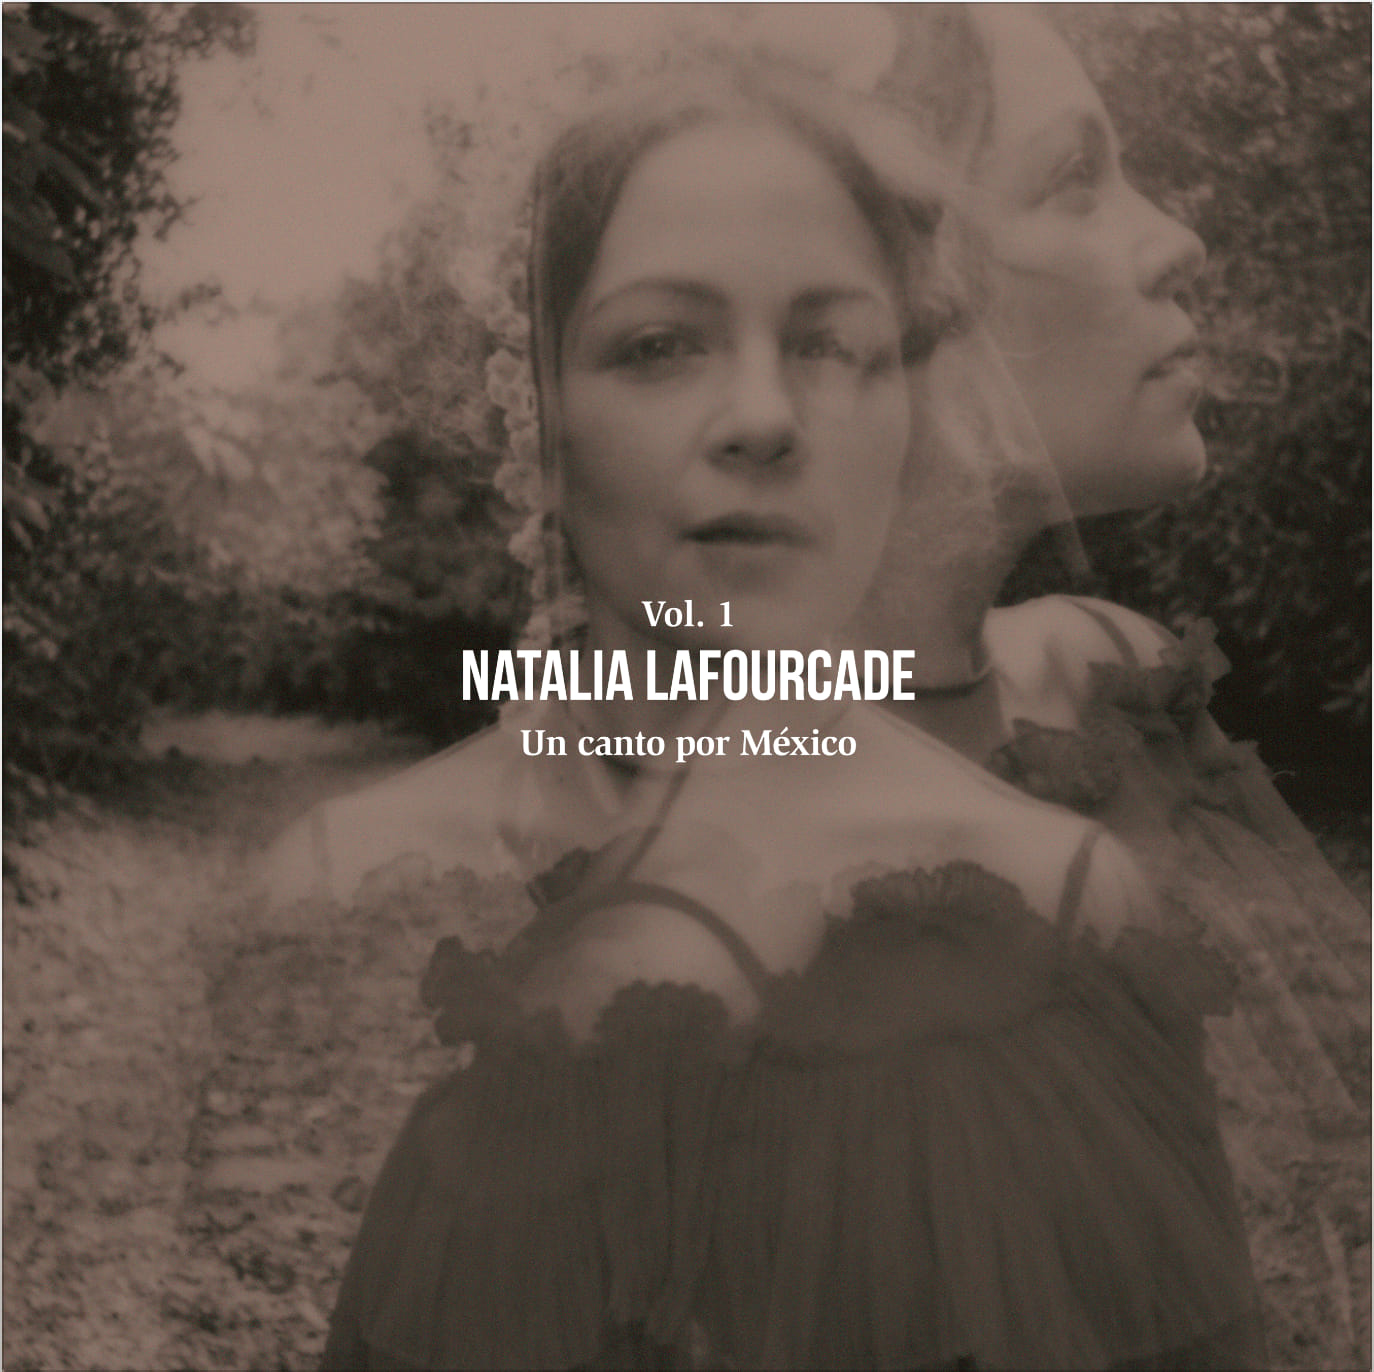 Natalia Lafourcade — Un Canto por México, Vol. 1